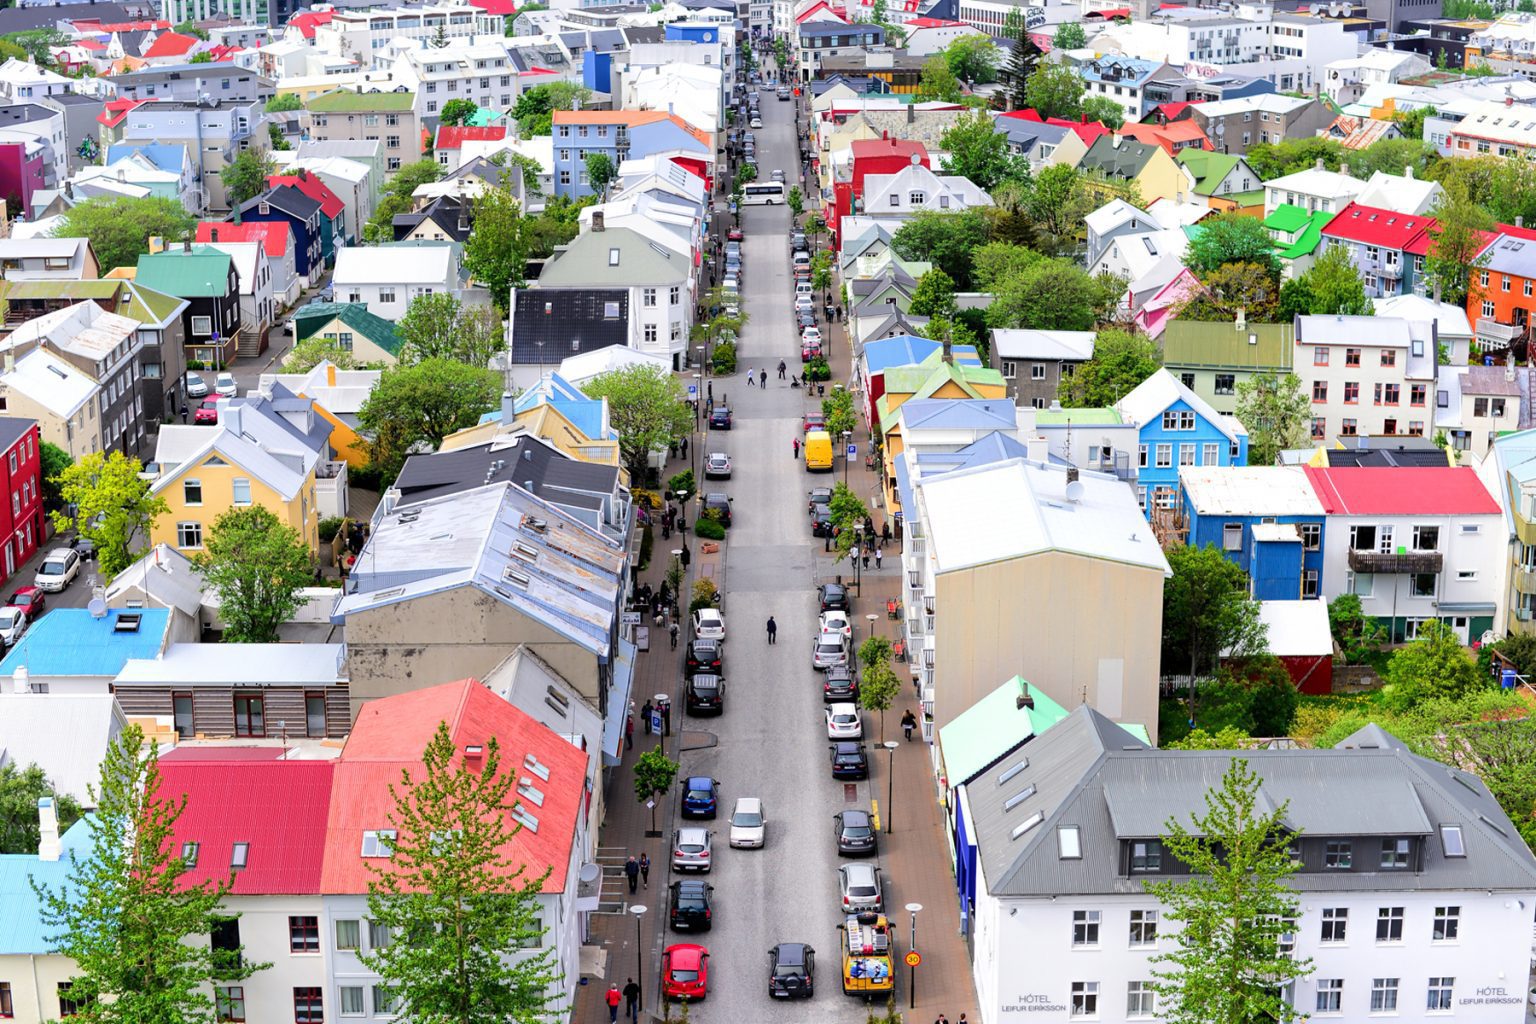 Reykjavík downtown